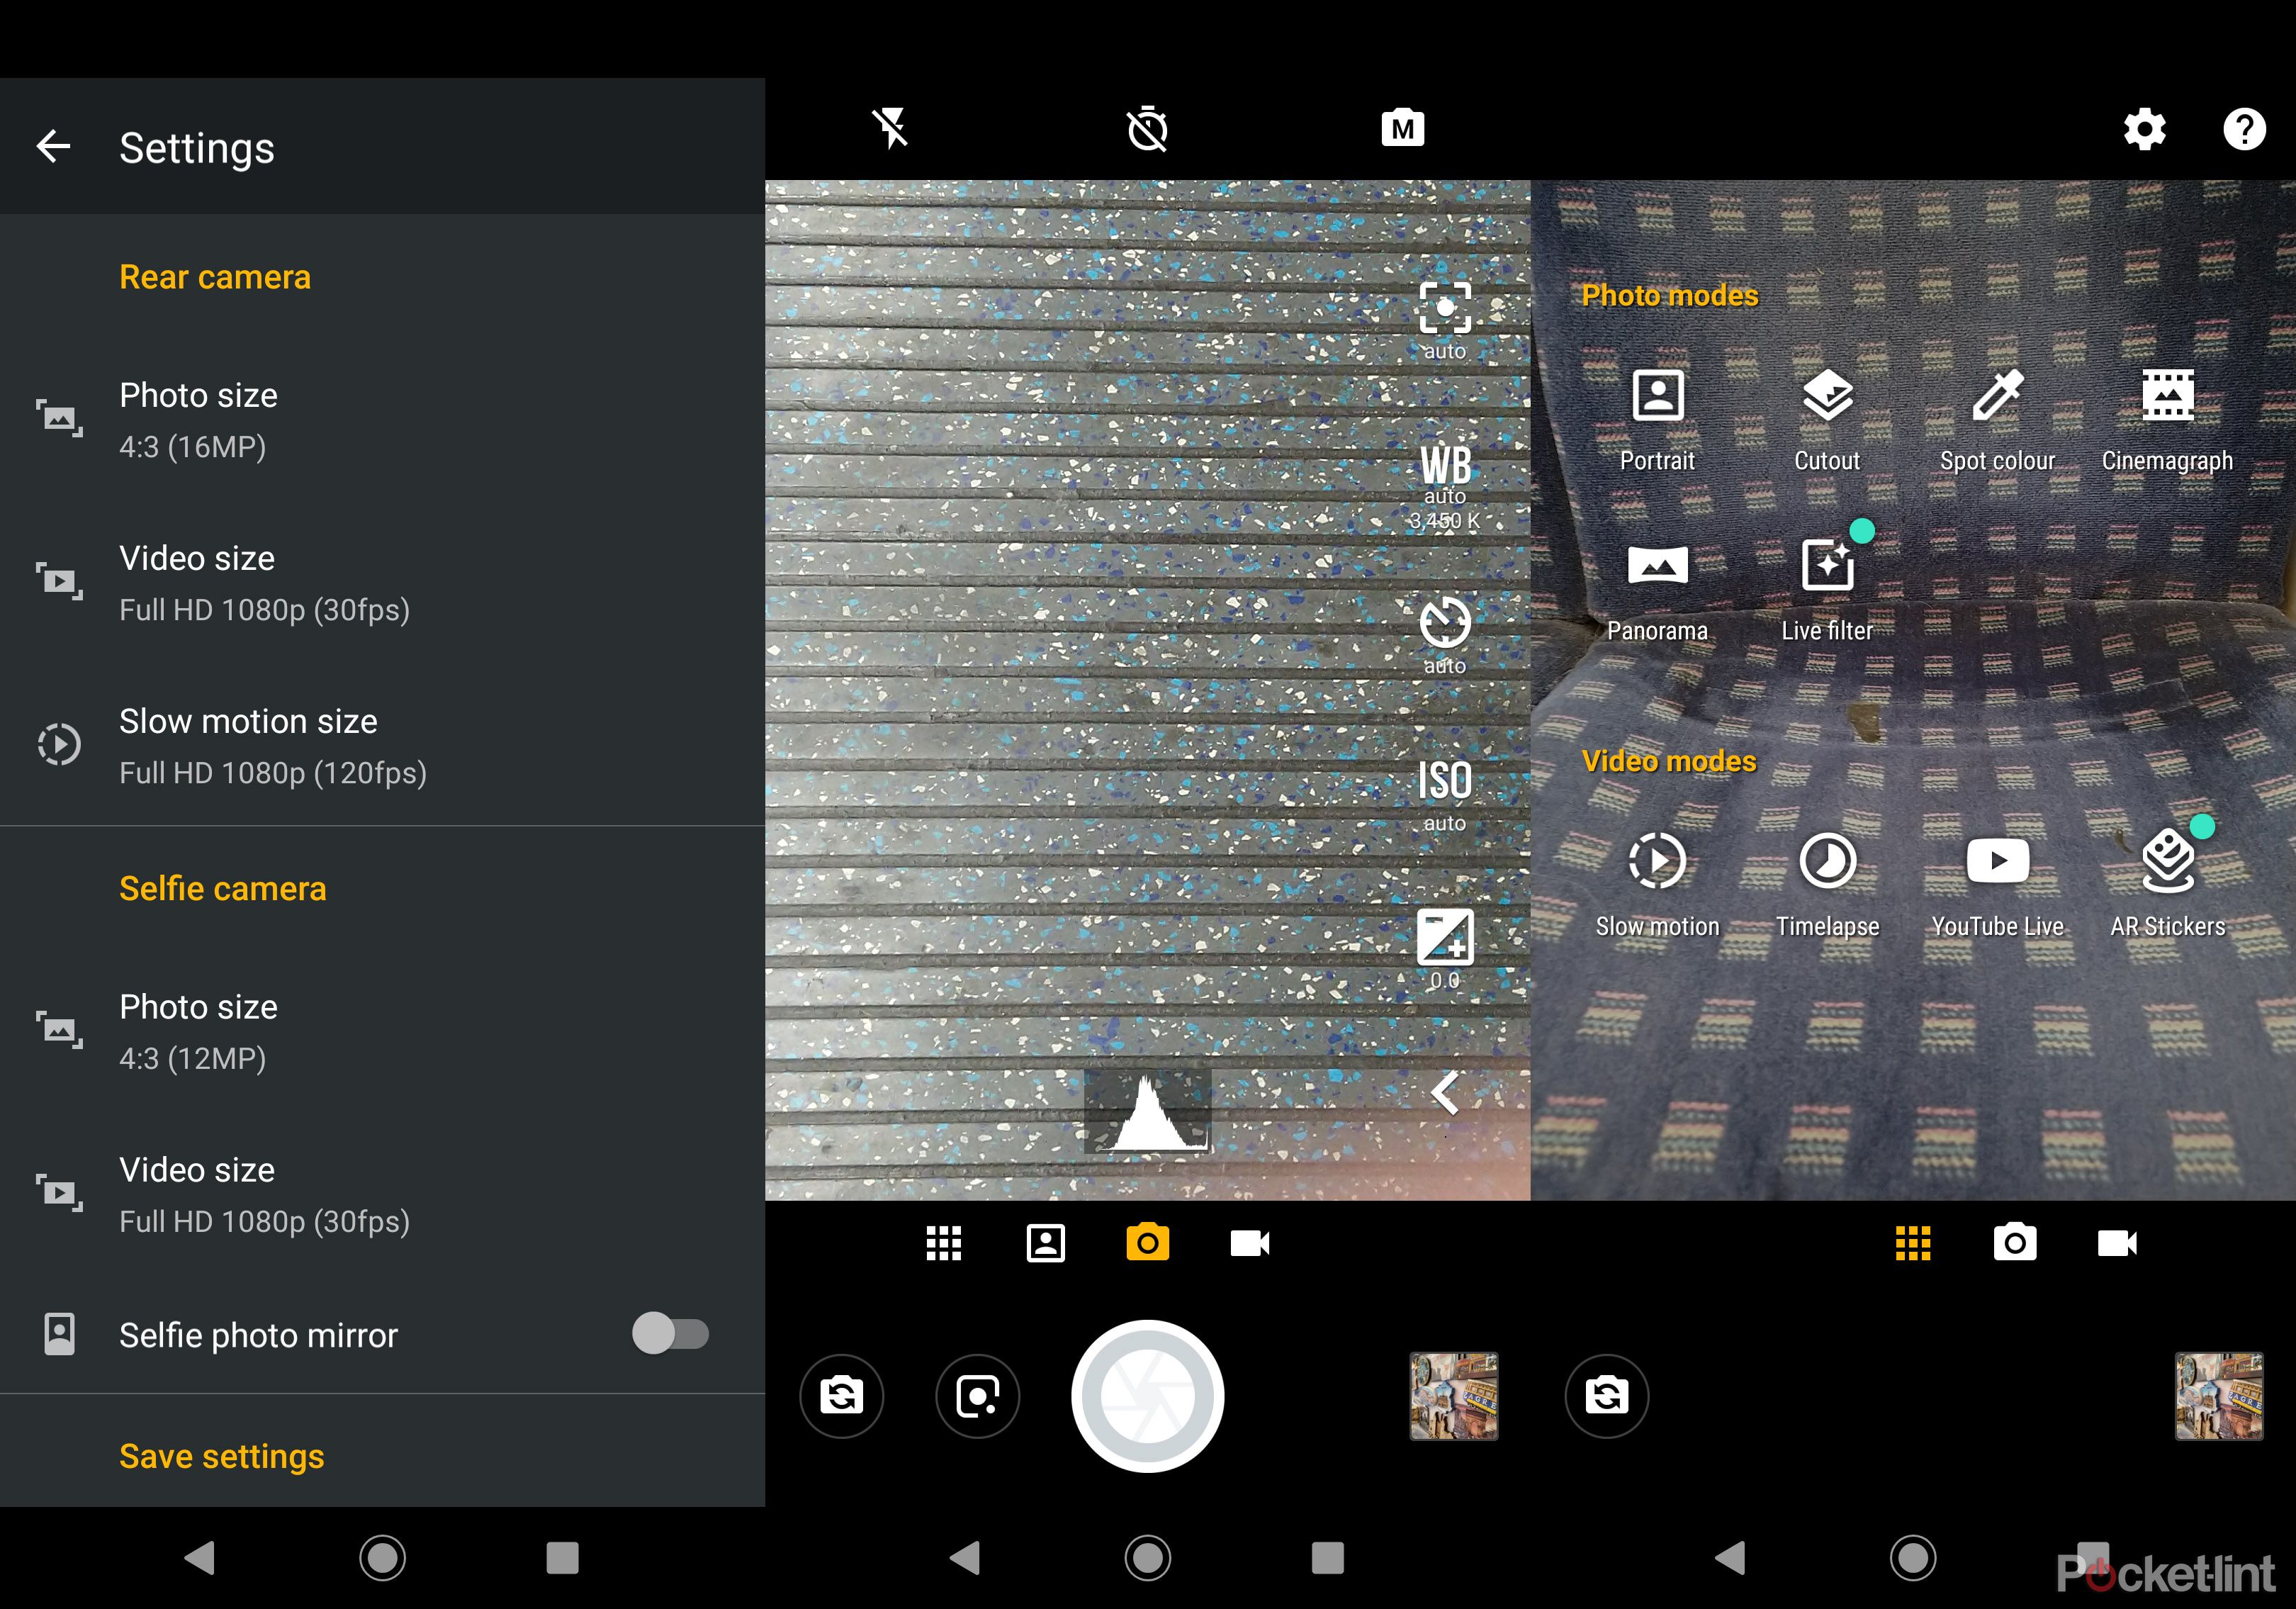 Motorola Moto G7 Plus software image 3